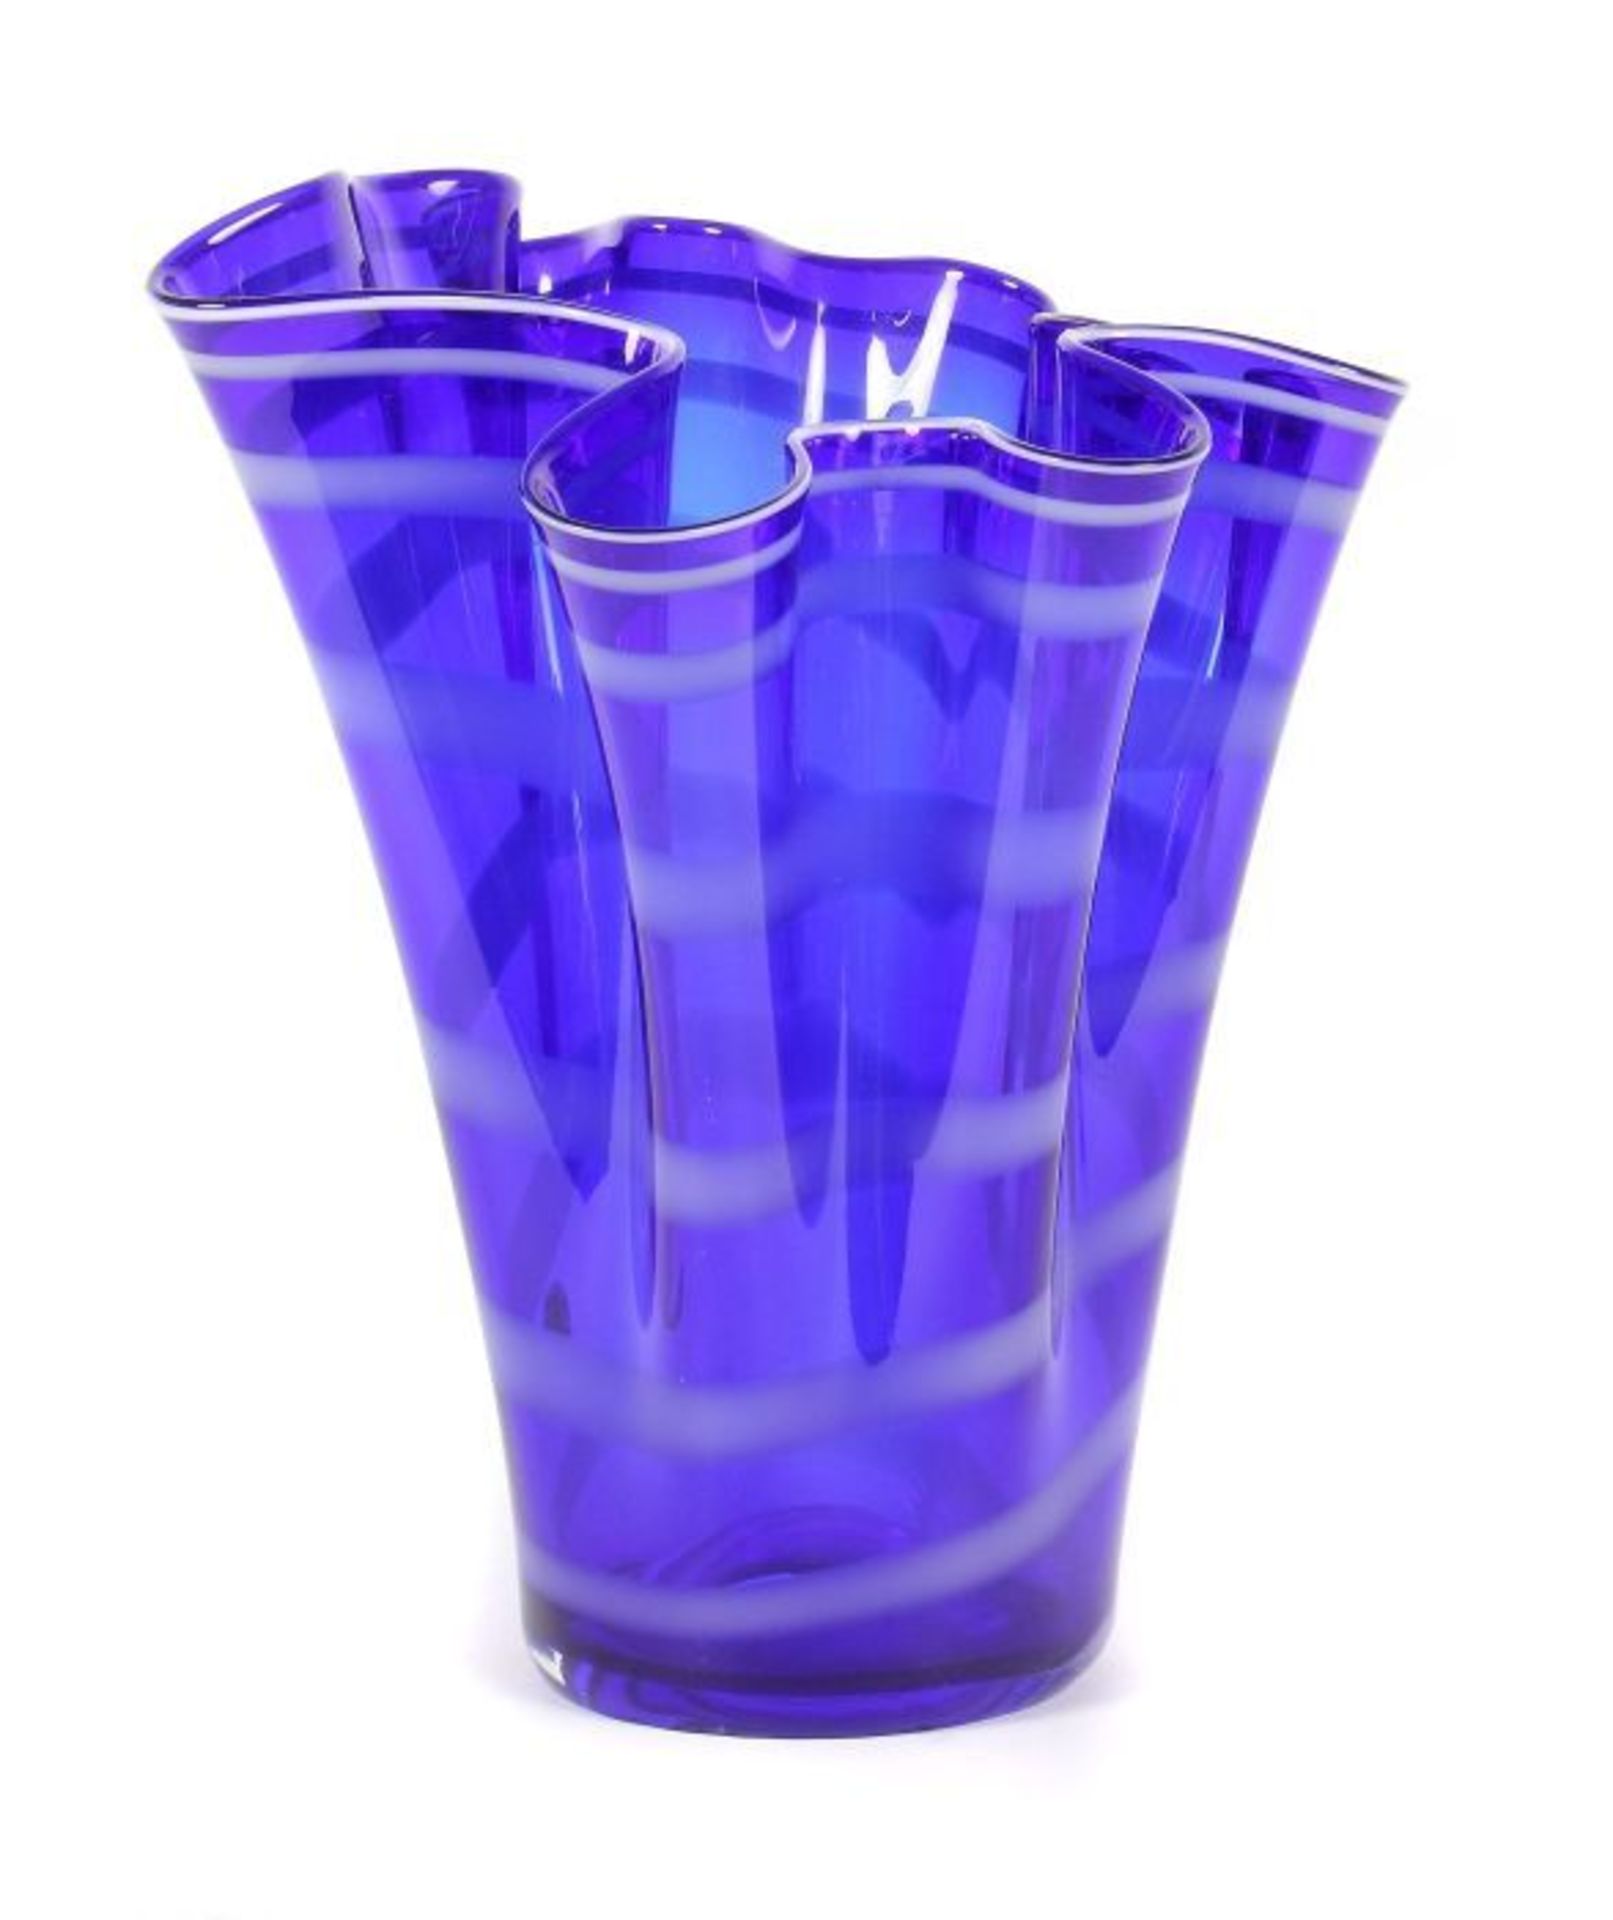 Fazzoletto Vase S.V.C.C. Vetri D'Arte, Murano, 1970er Jahre, blau eingefärbtes Glas, aufsteigend